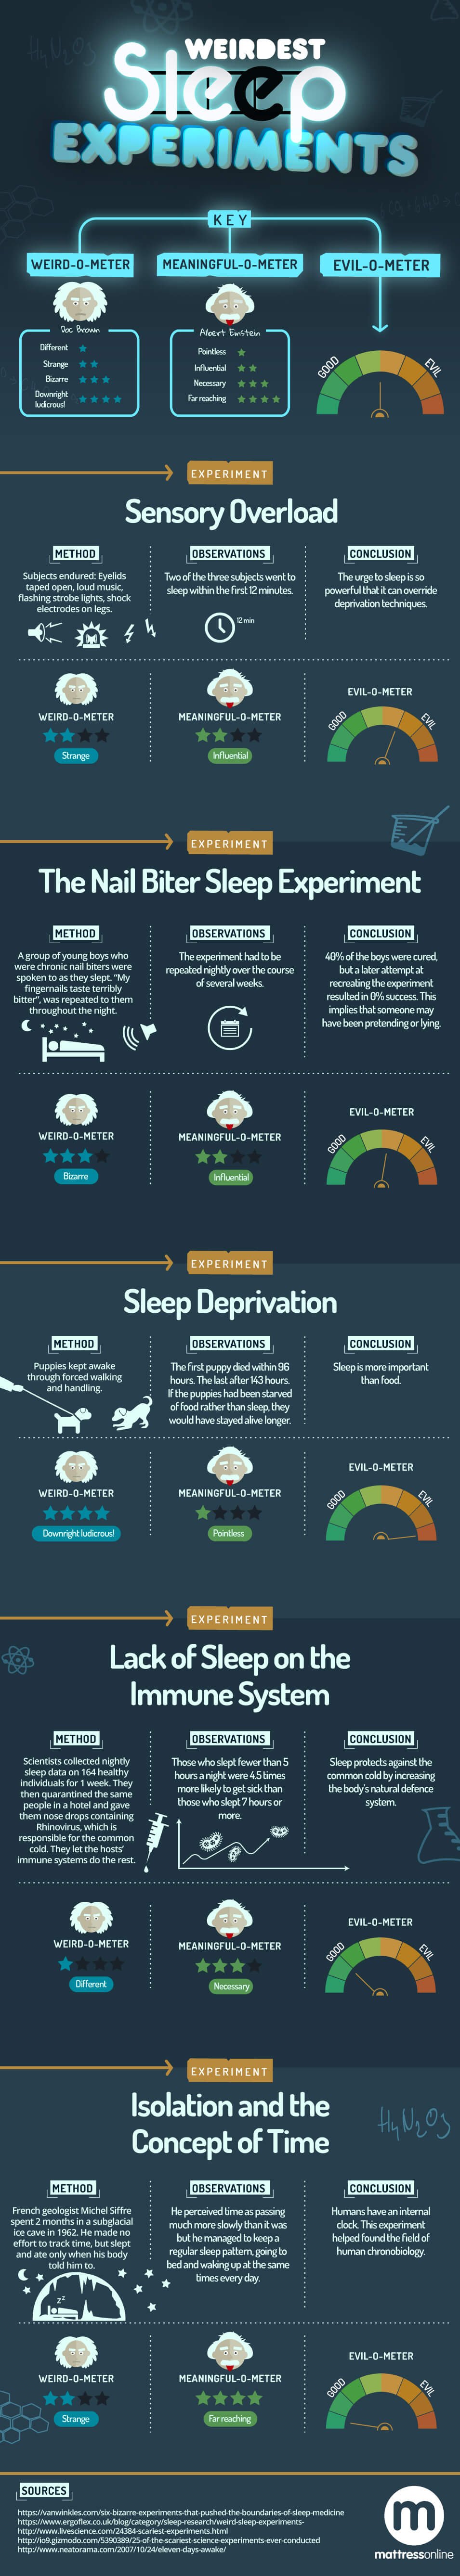 The Weirdest Sleep Experiments